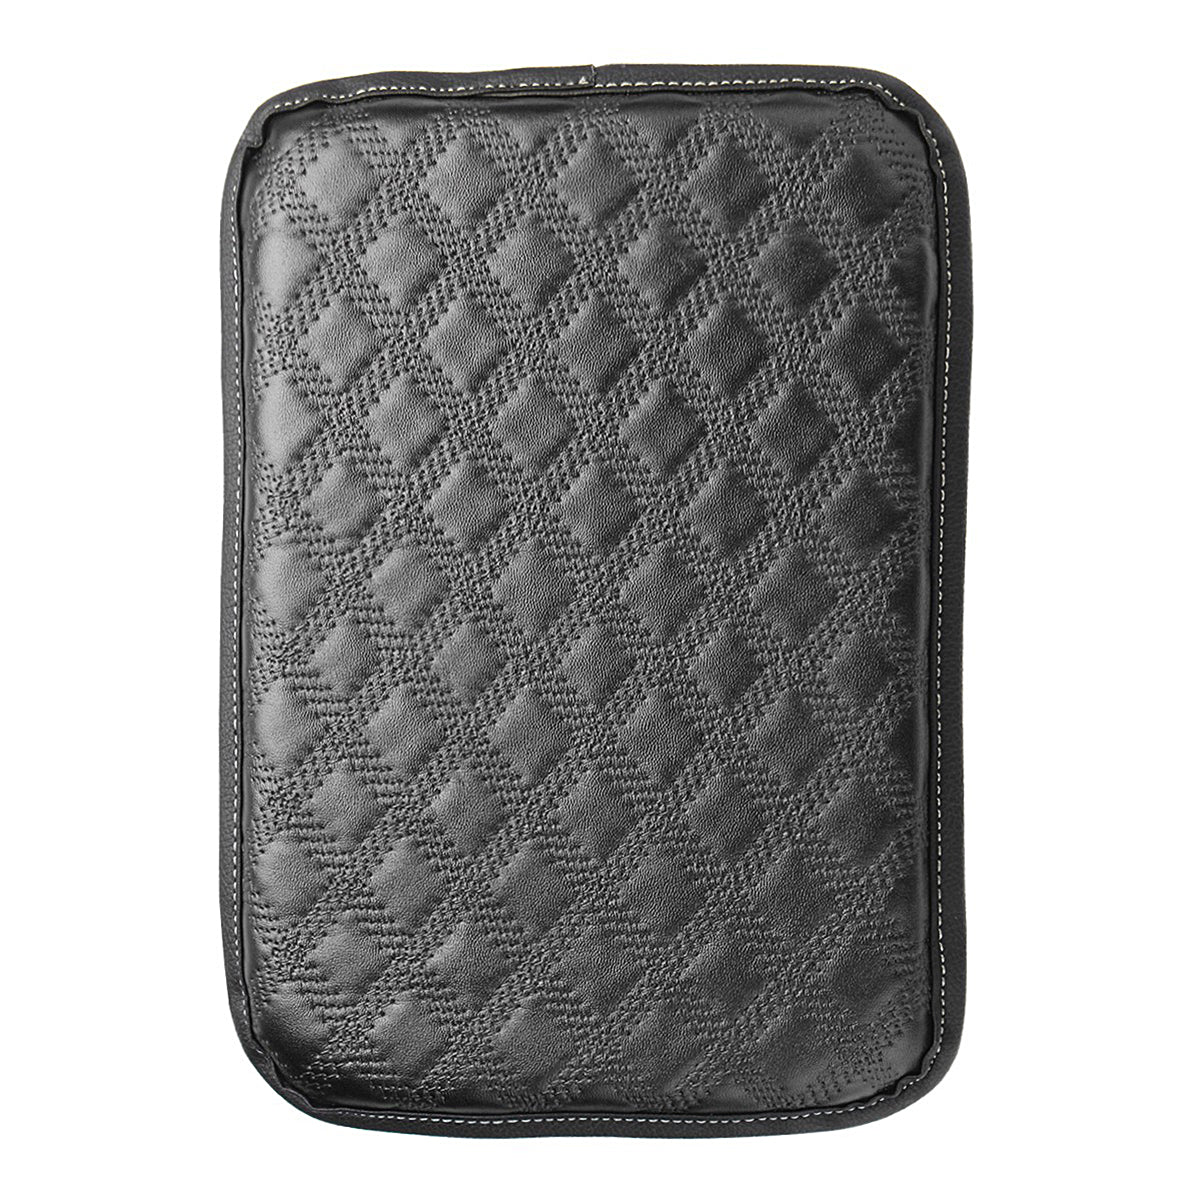 Universal Car Auto Armrest Pad Cover Center Console Box Leather Cushion 3-Colors - Auto GoShop